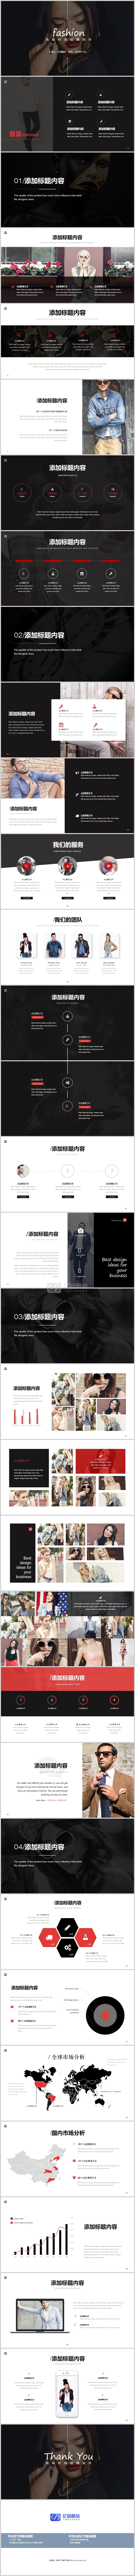 红黑配色欧美女模特背景的高端时尚品牌宣传PPT模板插图